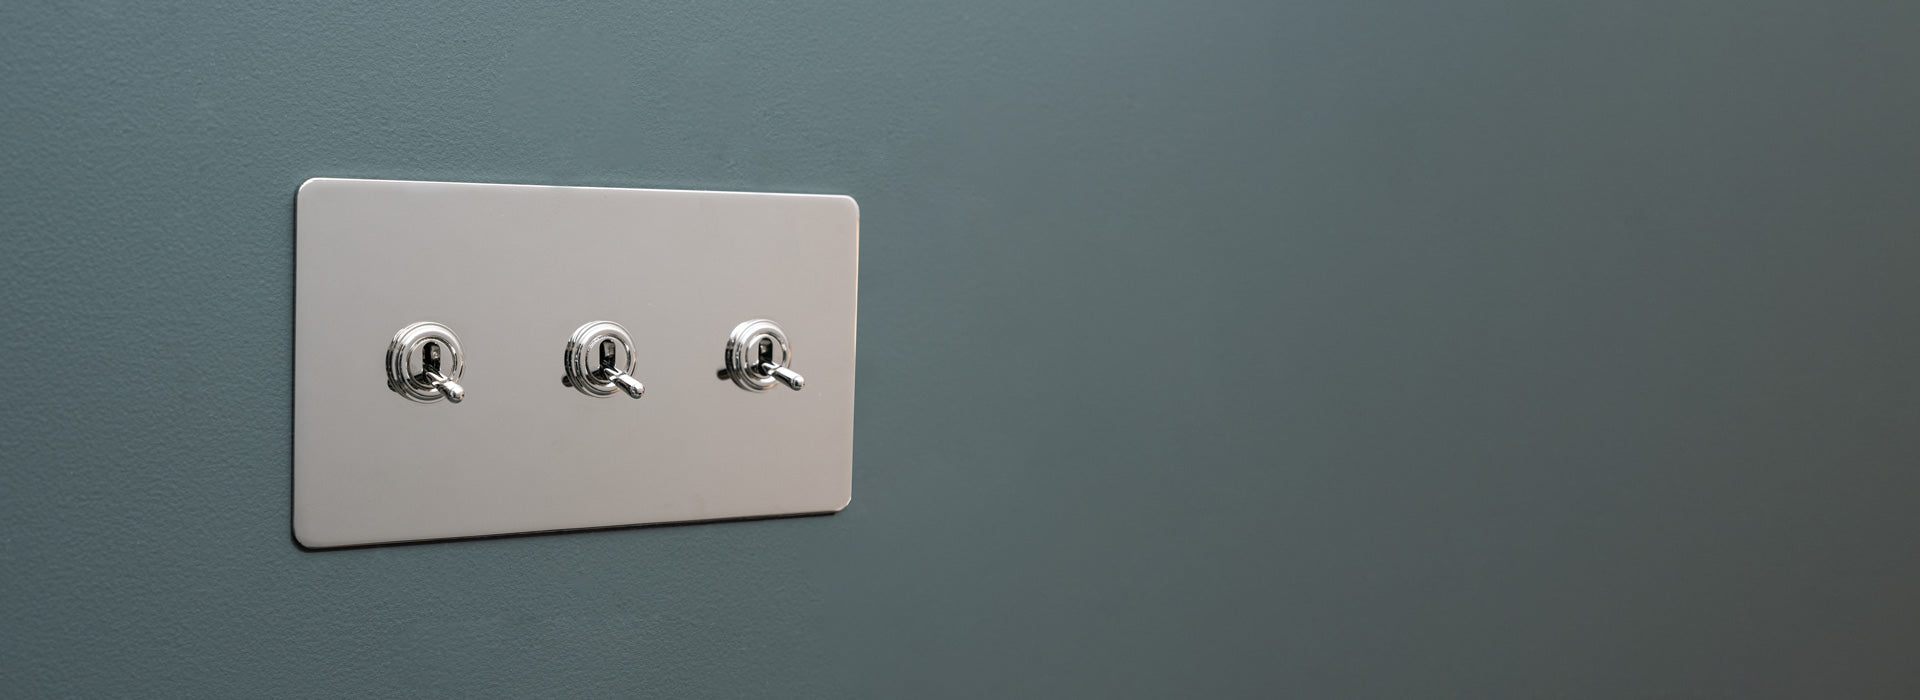 Nickel-Schalter mit drei Kipphebeln an einer grauen Wand